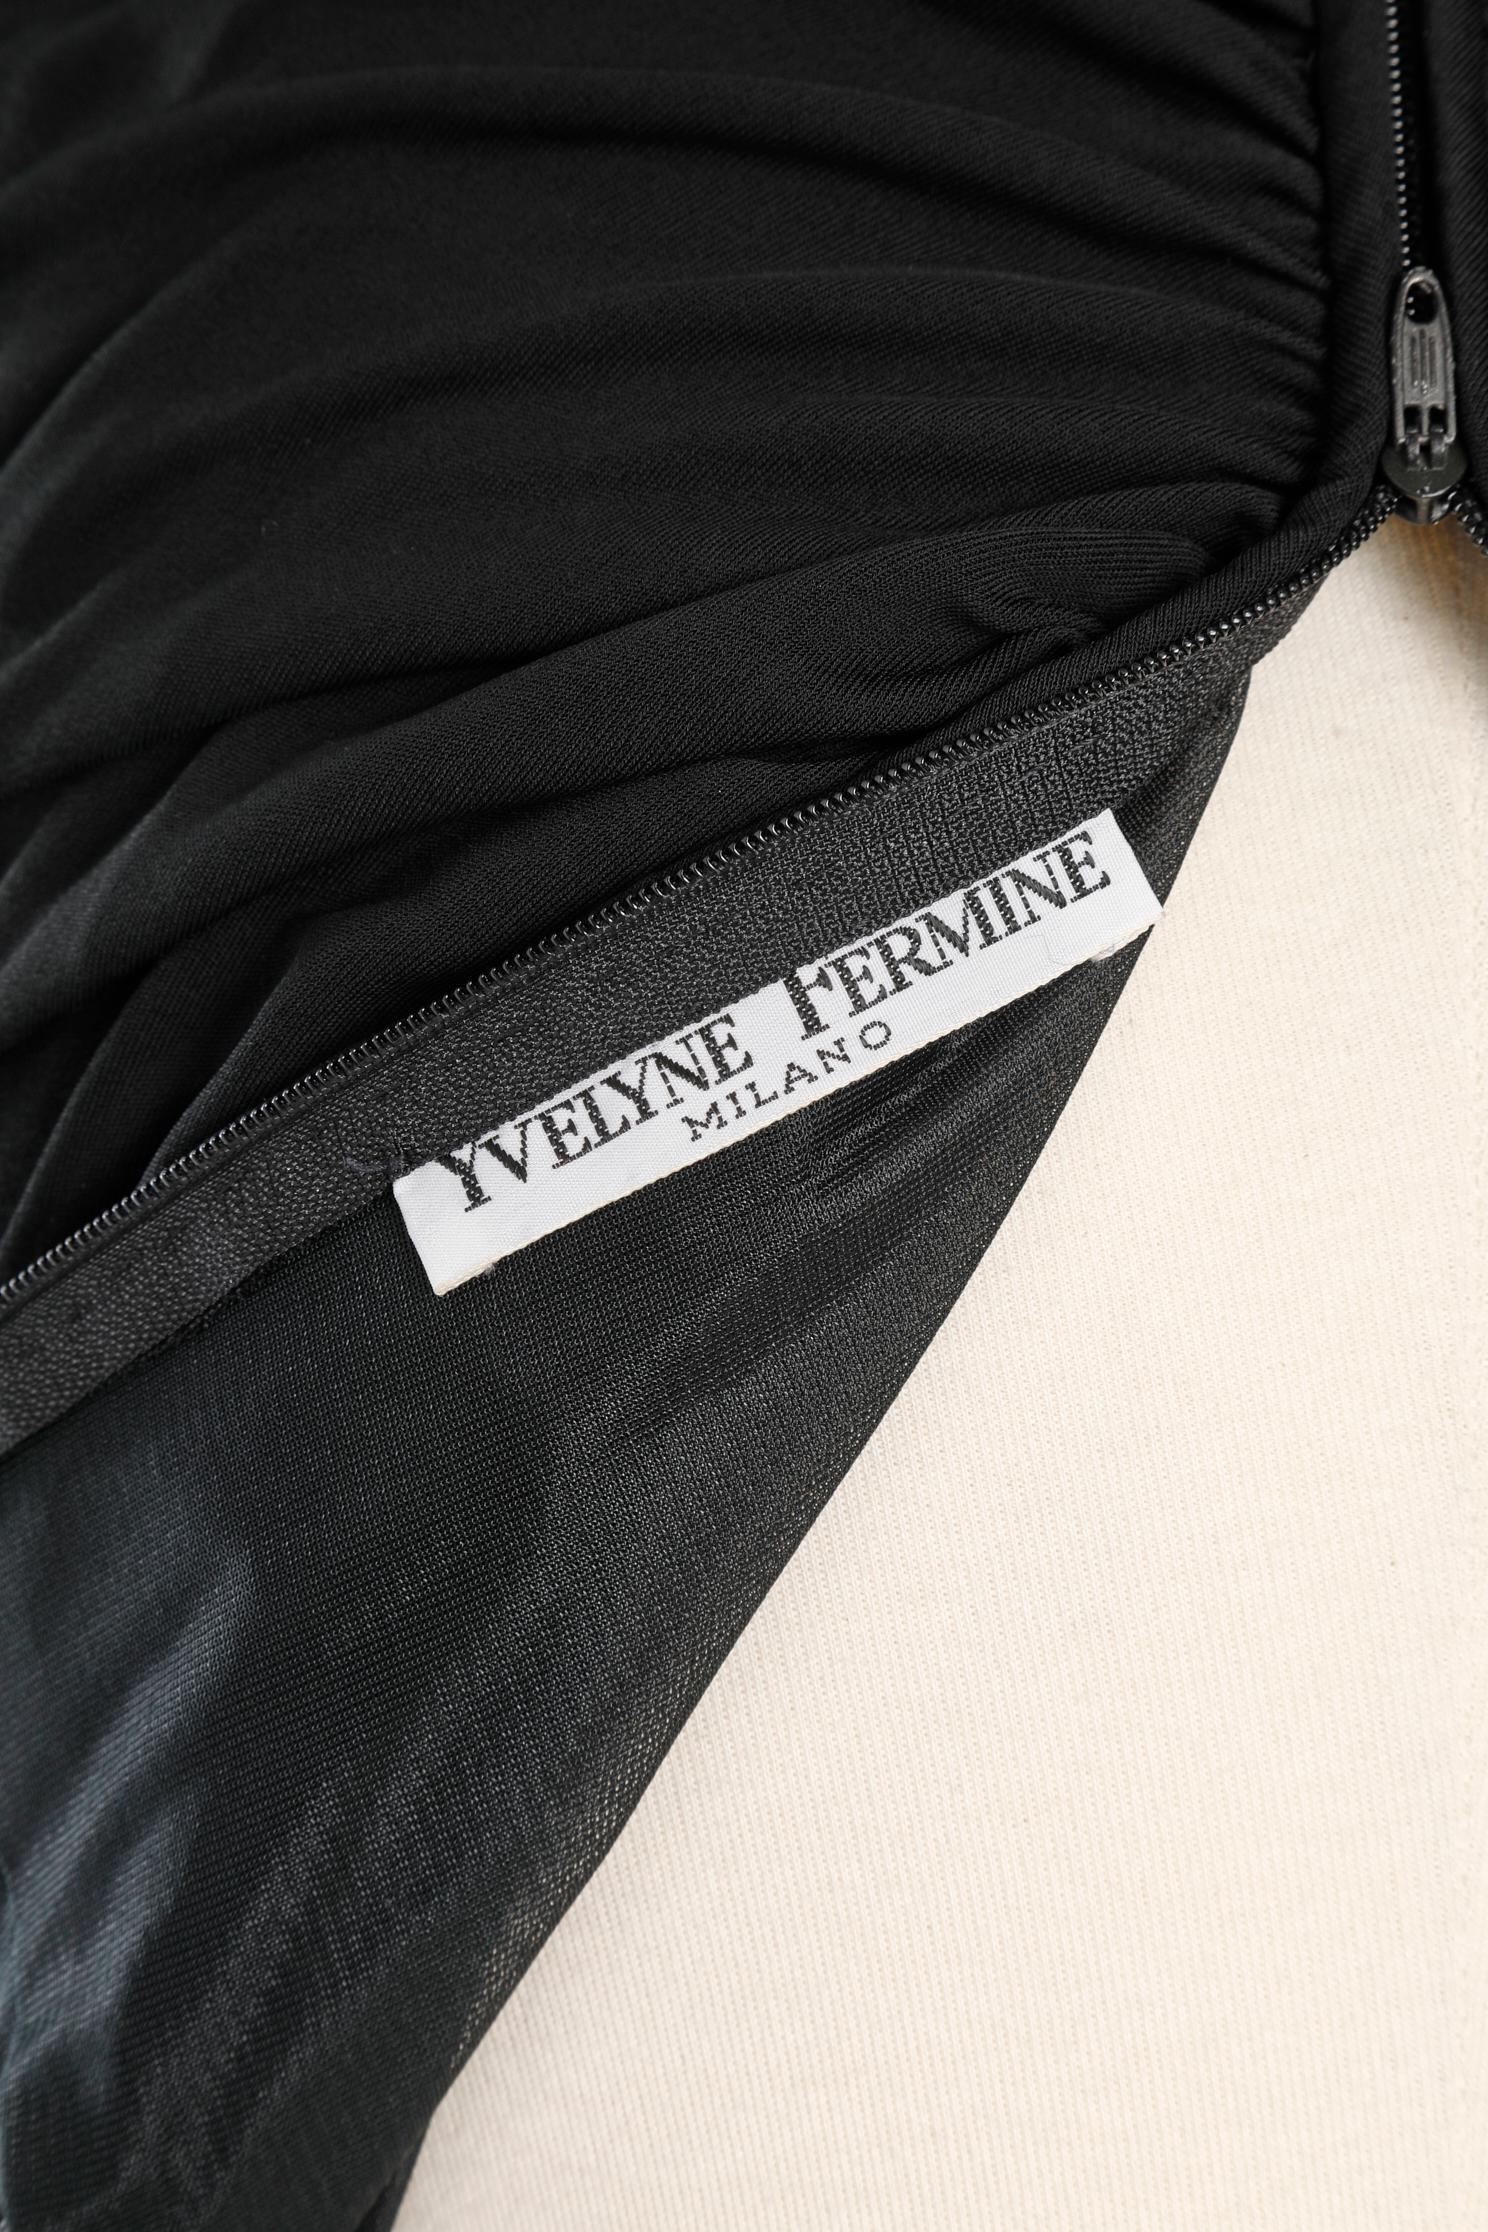 Robe bustier noire « F » Yveline Fermine des années 80  en vente 3